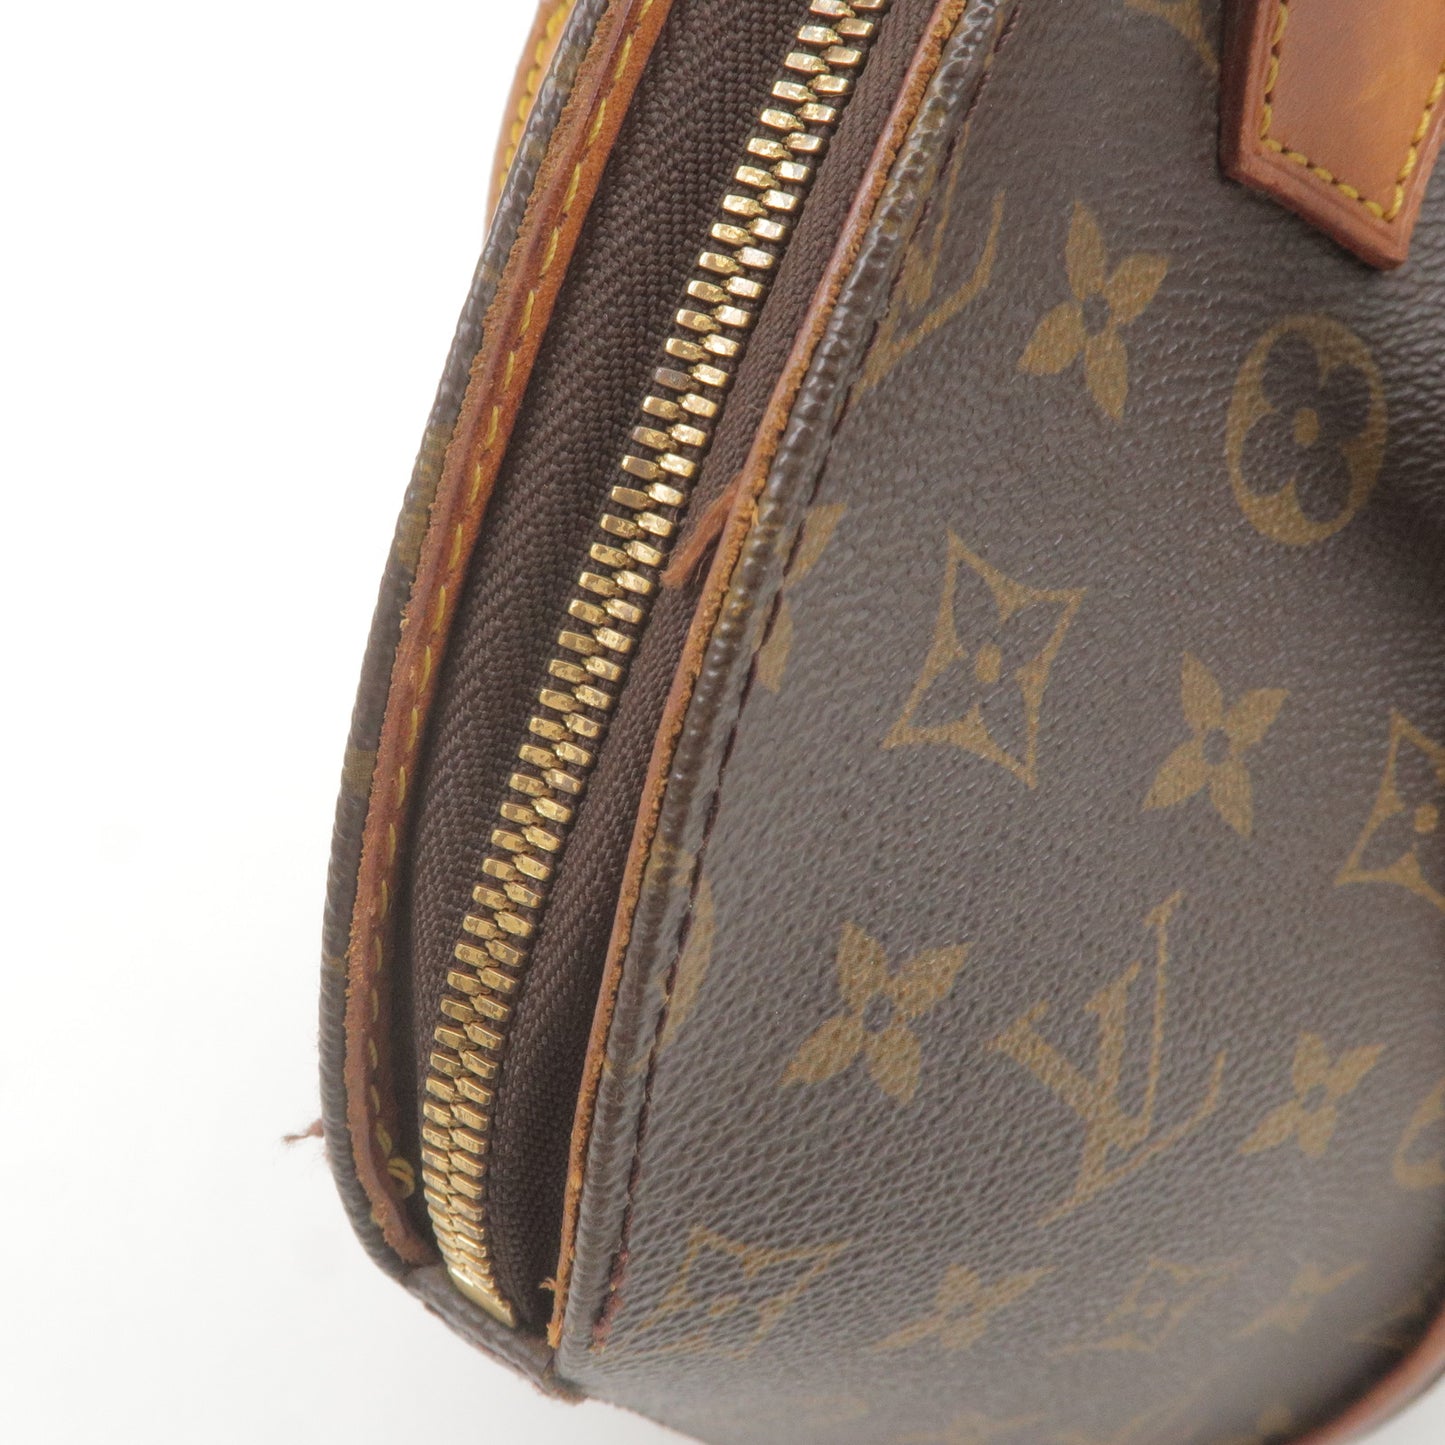 Authenticated used Louis Vuitton Monogram Ellipse PM M51127 Handbag Bag 0063 Louis Vuitton, Adult Unisex, Size: (HxWxD): 25cm x 31cm x 12cm / 9.84'' x